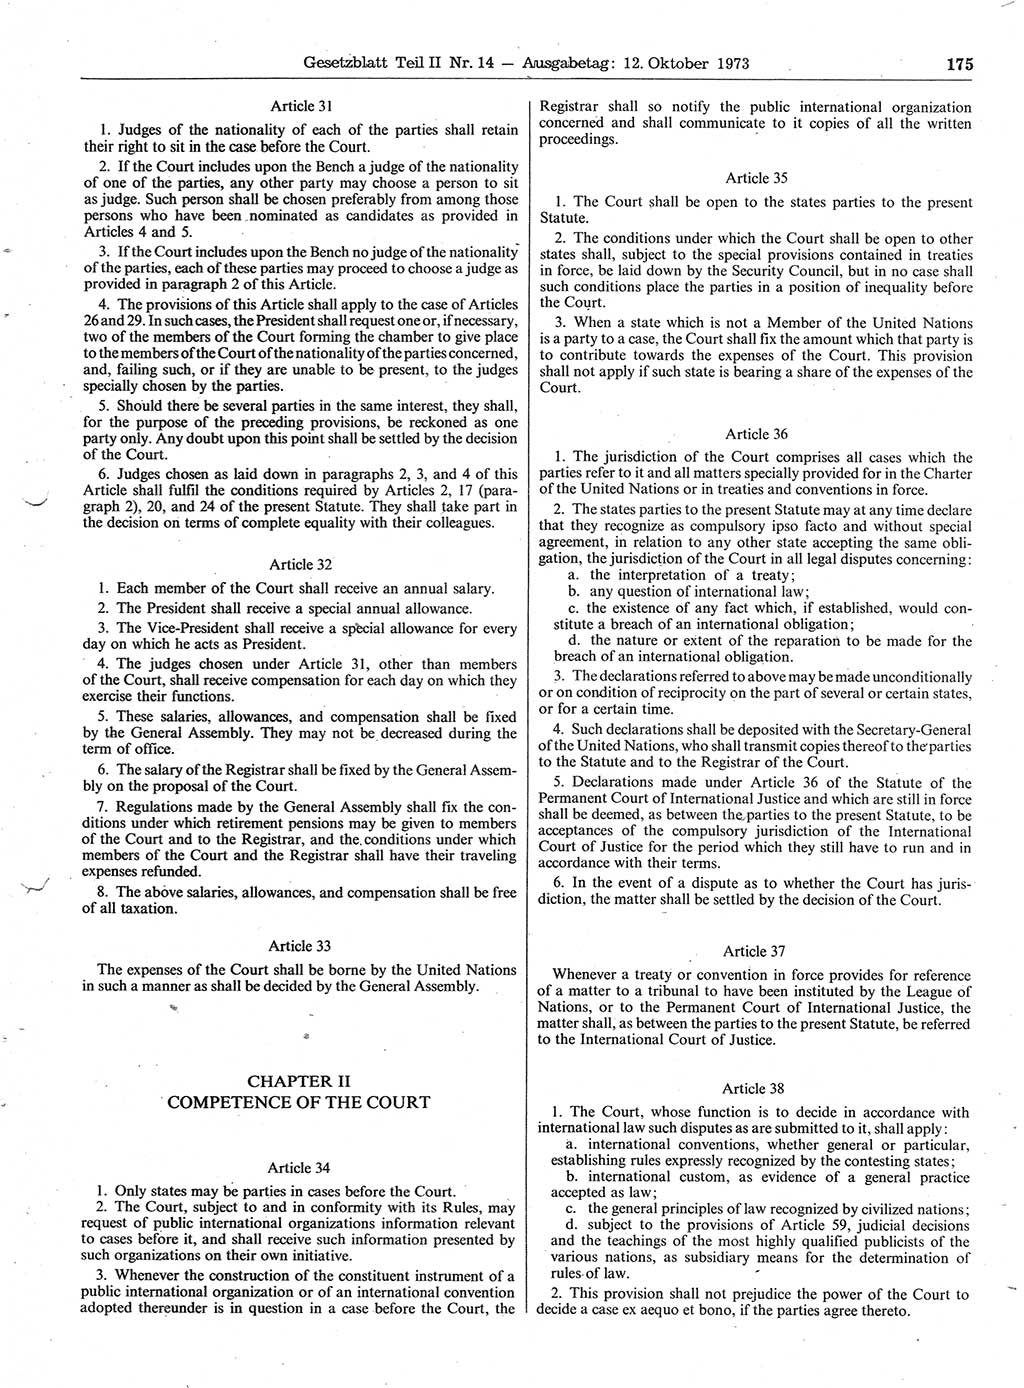 Gesetzblatt (GBl.) der Deutschen Demokratischen Republik (DDR) Teil ⅠⅠ 1973, Seite 175 (GBl. DDR ⅠⅠ 1973, S. 175)